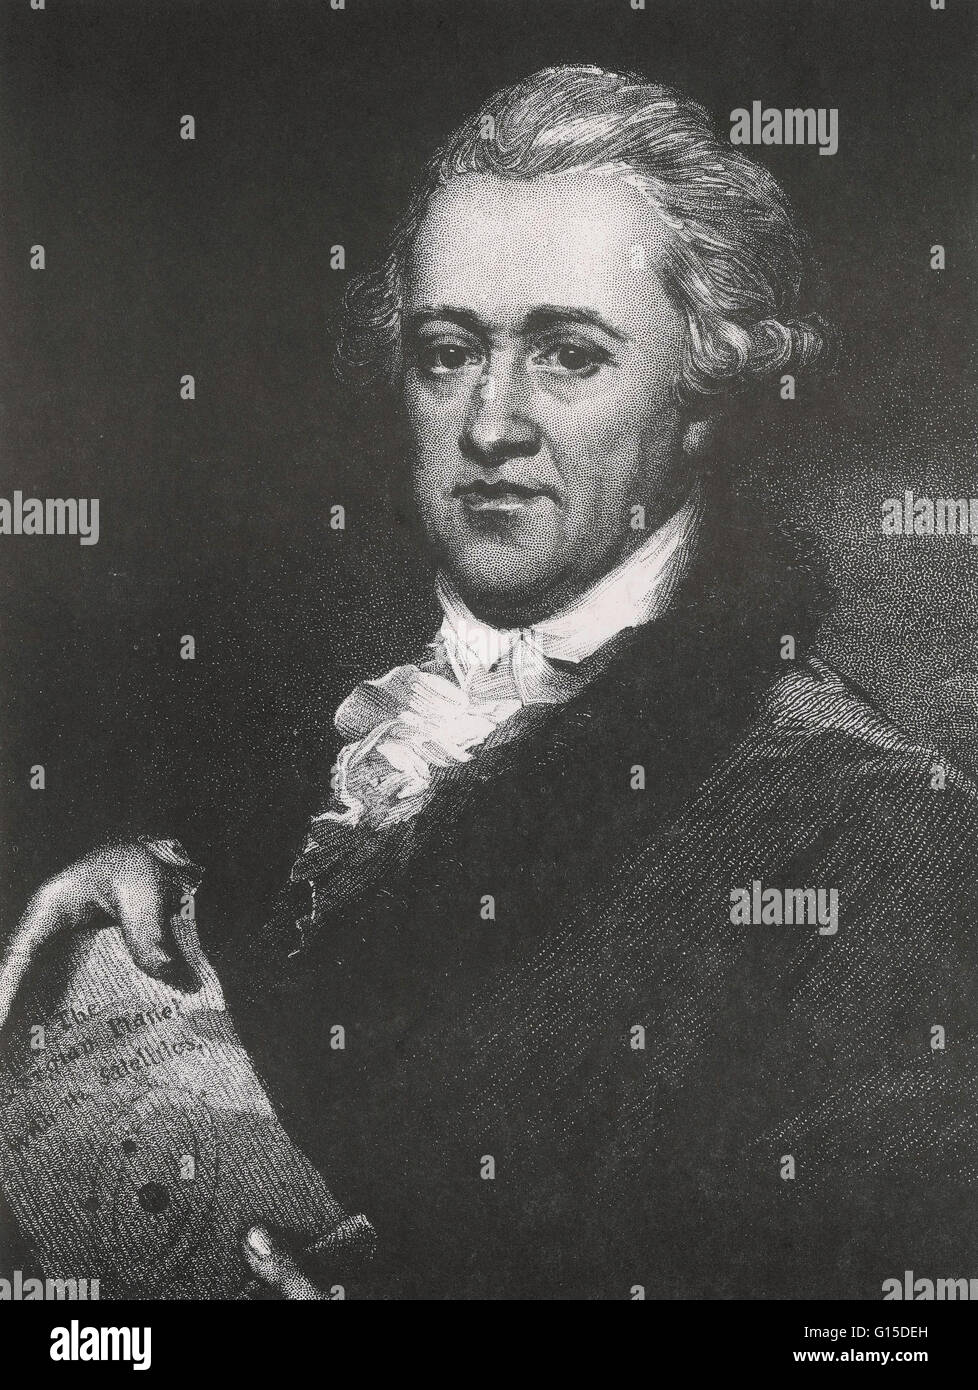 Englische Astronom Sir Frederick William Herschel (1738-1822). Herschel wurde berühmt für die Entdeckung des Planeten Uranus neben einigen seiner großen Monde Titania und Oberon. Er entdeckte auch Infrarot-Strahlung. Stockfoto